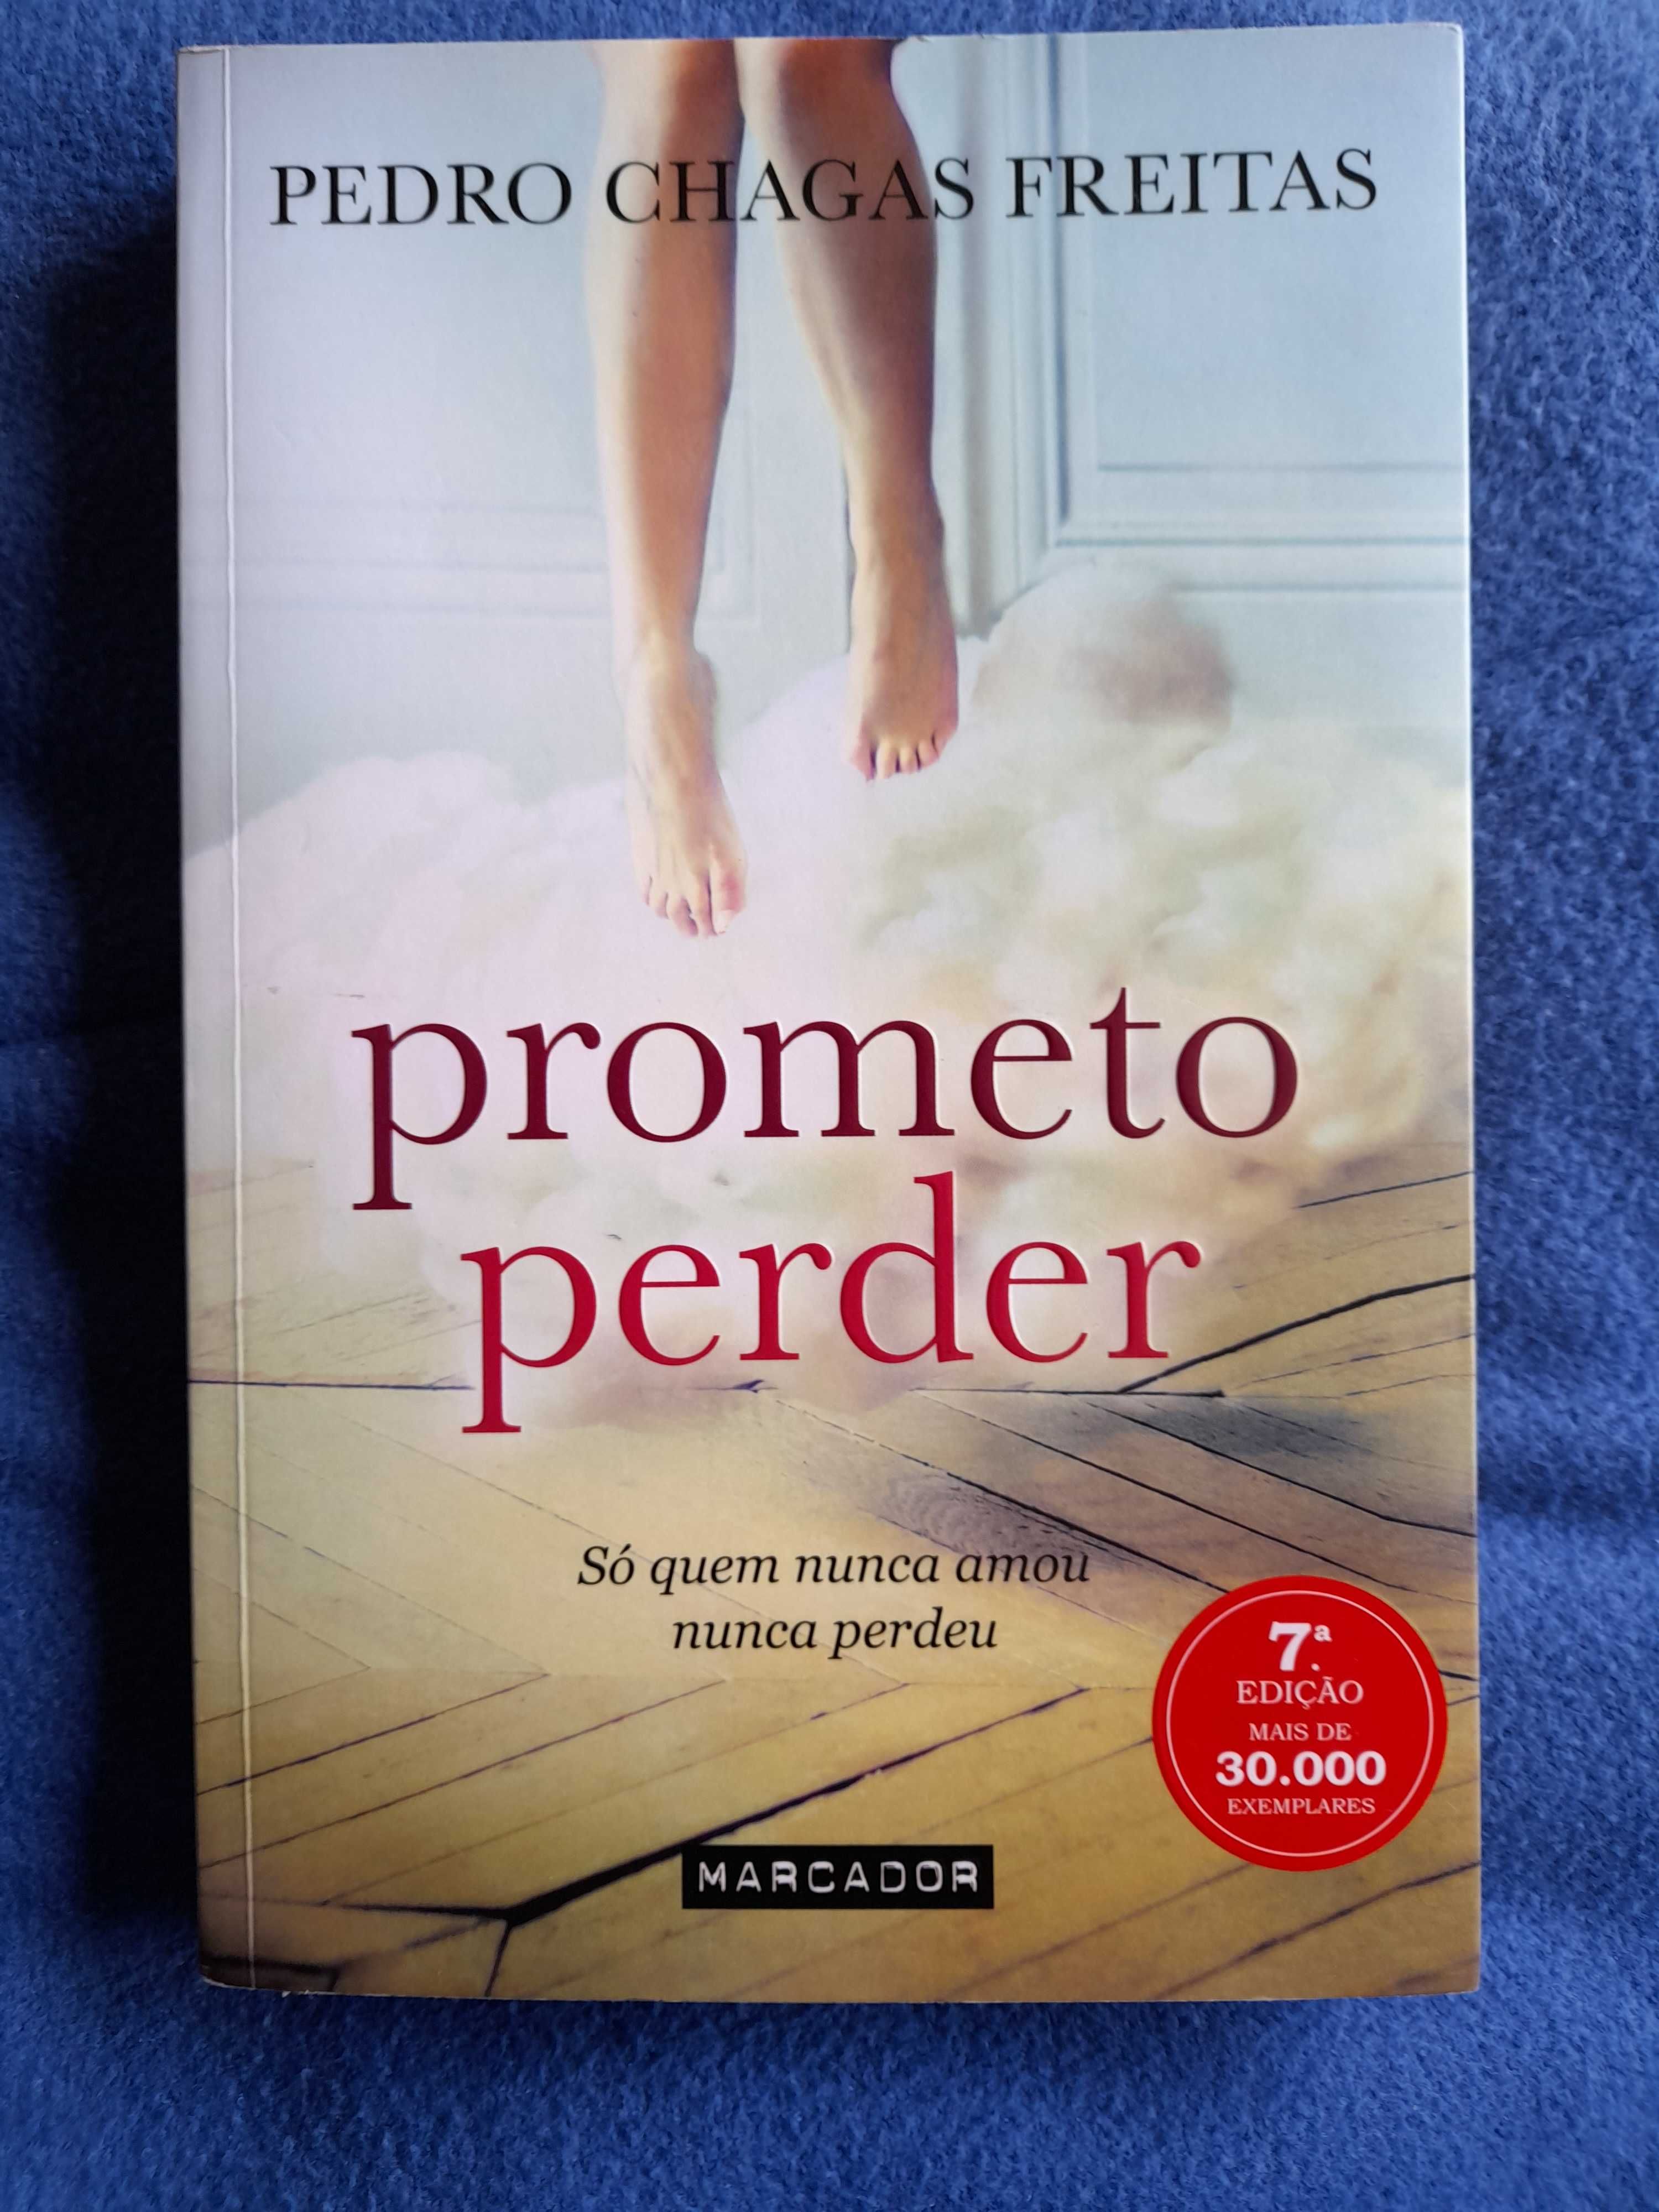 Livro "Prometo Perder"